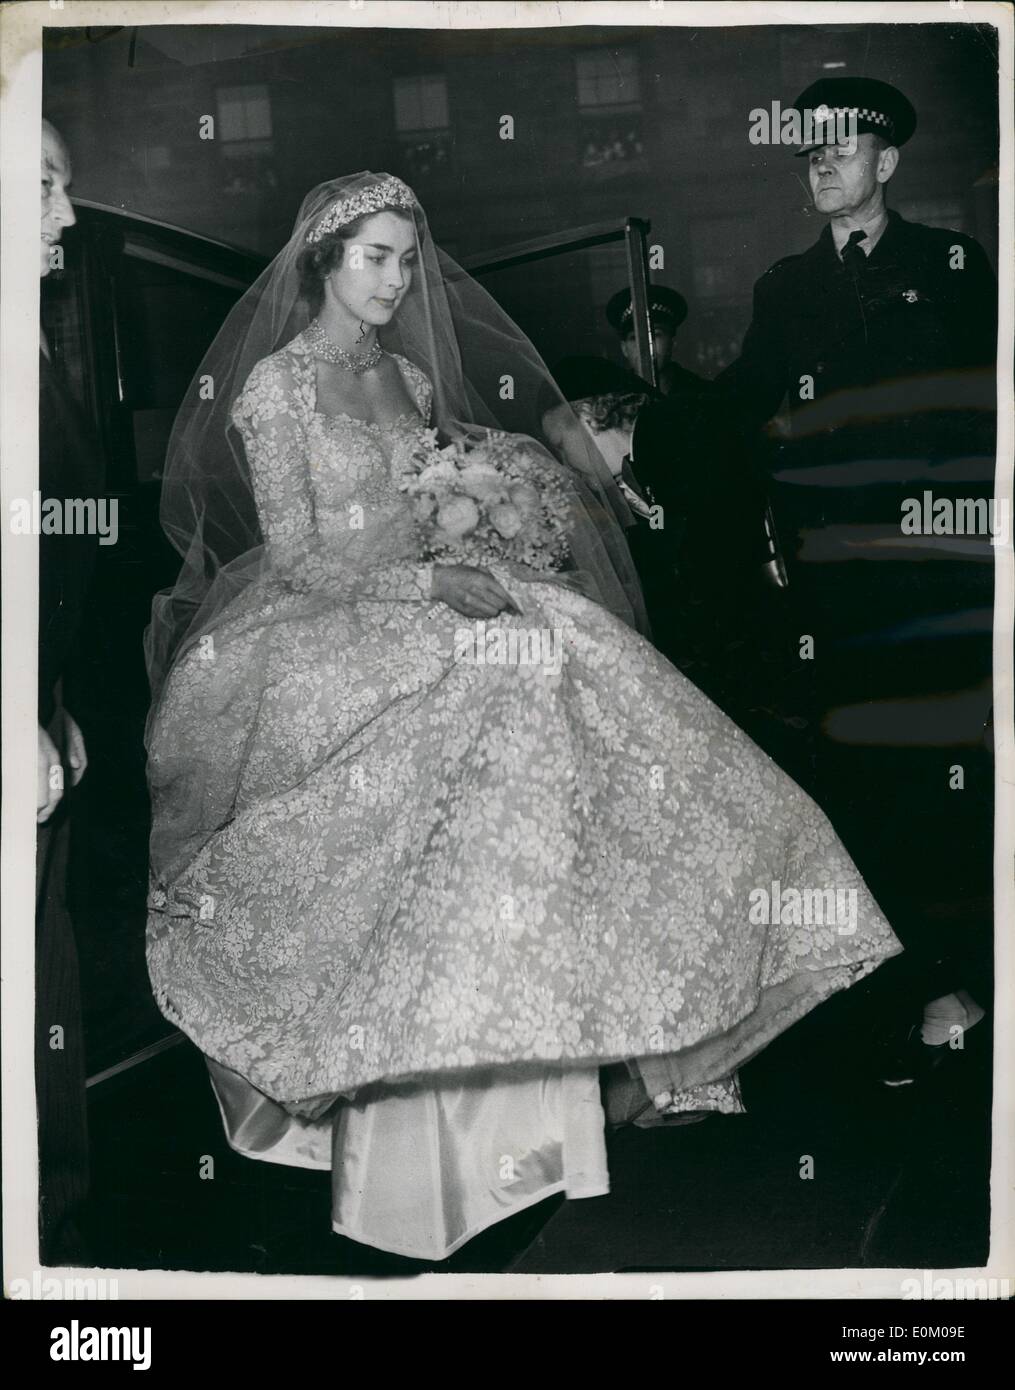 enero-01-1953-llega-la-novia-para-su-boda-ceremonia-en-edimburgo-la-fotografia-muestra-la-srta-jane-mcneill-llegar-a-st-giles-edimburgo-hoy-para-su-boda-con-el-conde-de-dalkeith-entre-los-invitados-a-la-boda-fueron-sm-la-reina-el-duque-de-edimburgo-y-el-duque-y-la-duquesa-de-gloucester-princess-margaret-etc-e0m09e.jpg